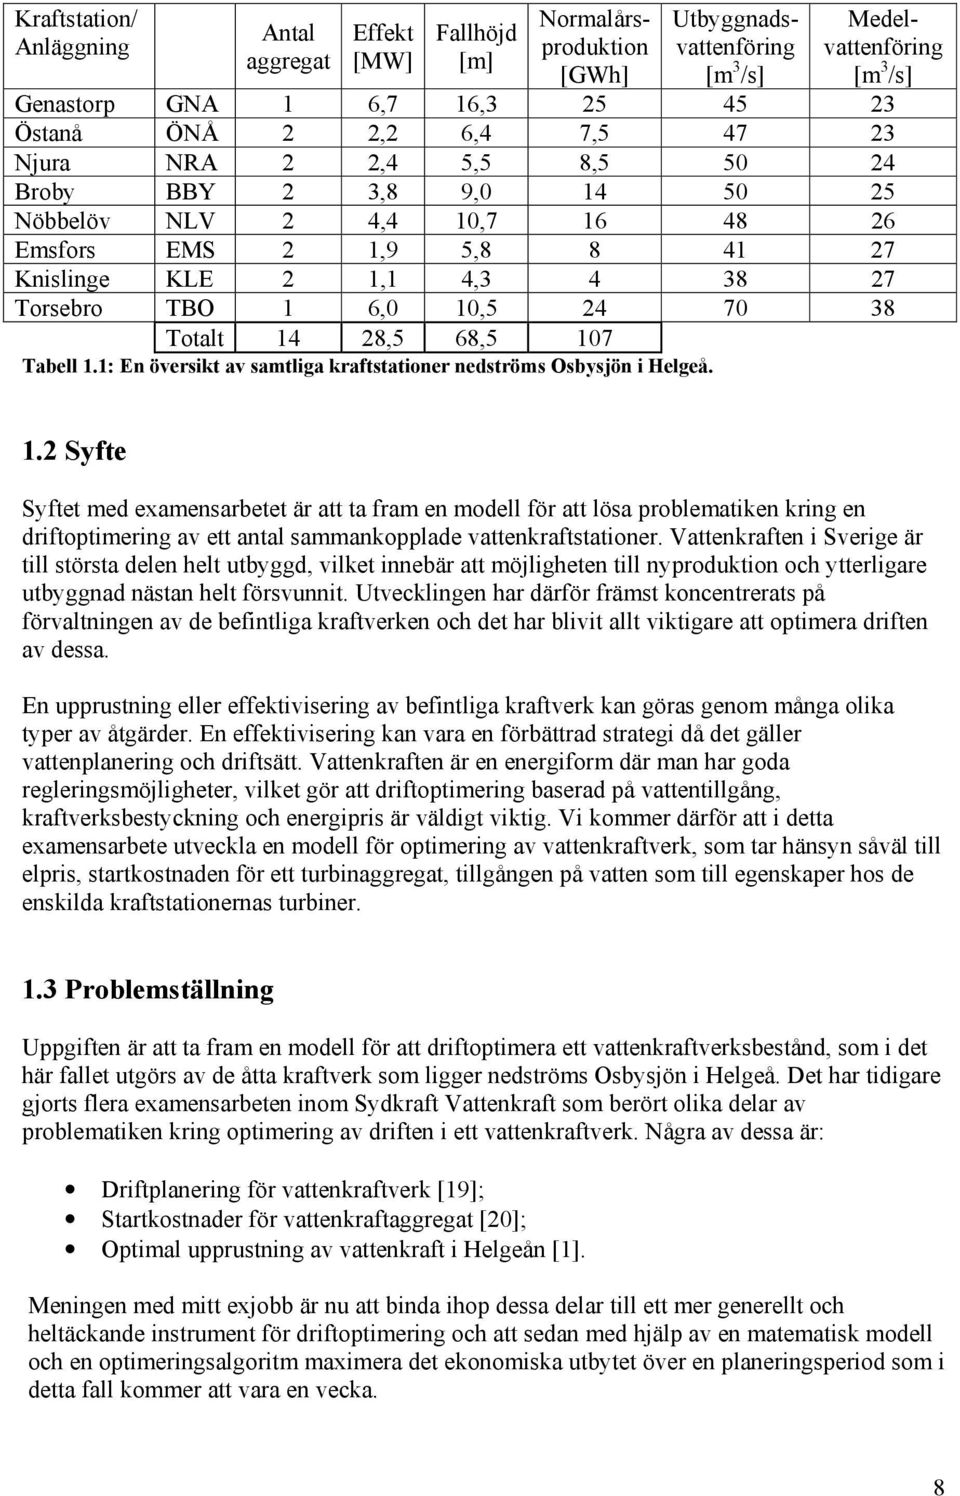 1: En övers av samla rafsaoner nedsröms Osbysjön Heleå. 1.2 Syfe Syfe med examensarbee är a a fram en modell för a lösa problemaen rn en drfopmern av e anal sammanopplade vaenrafsaoner.